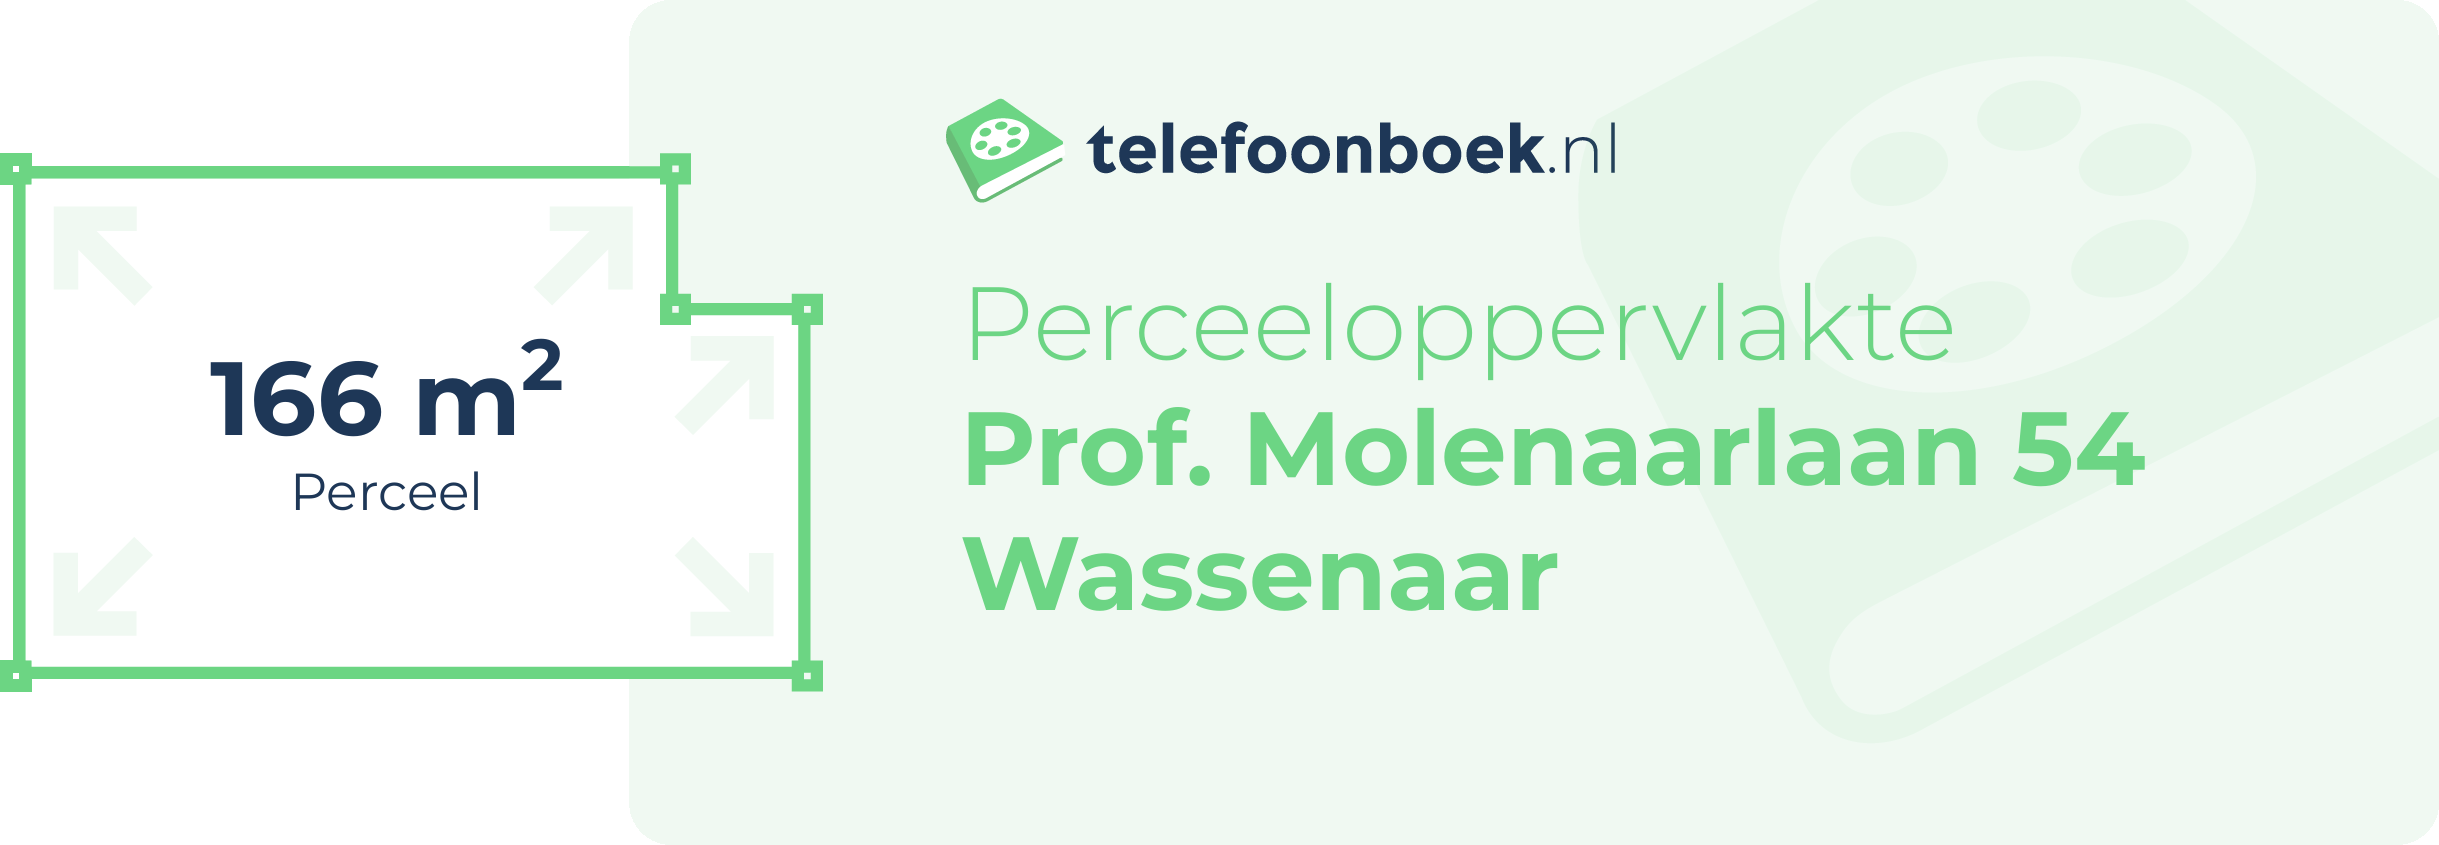 Perceeloppervlakte Prof. Molenaarlaan 54 Wassenaar